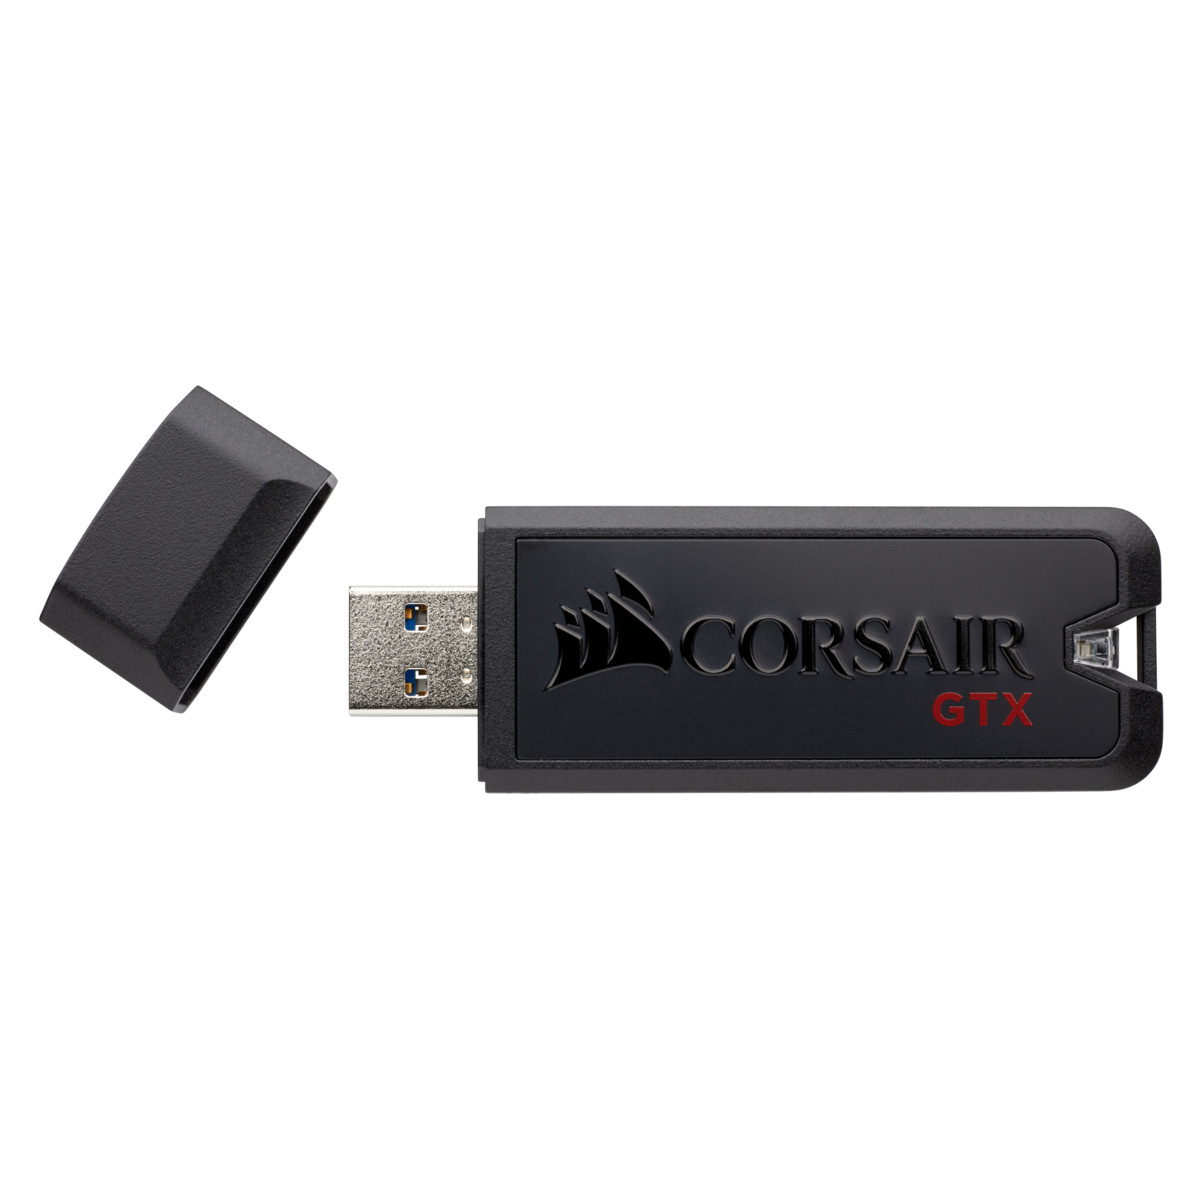 USB 3.1 Corsair Voyager GTX 1TB - Hàng chính hãng